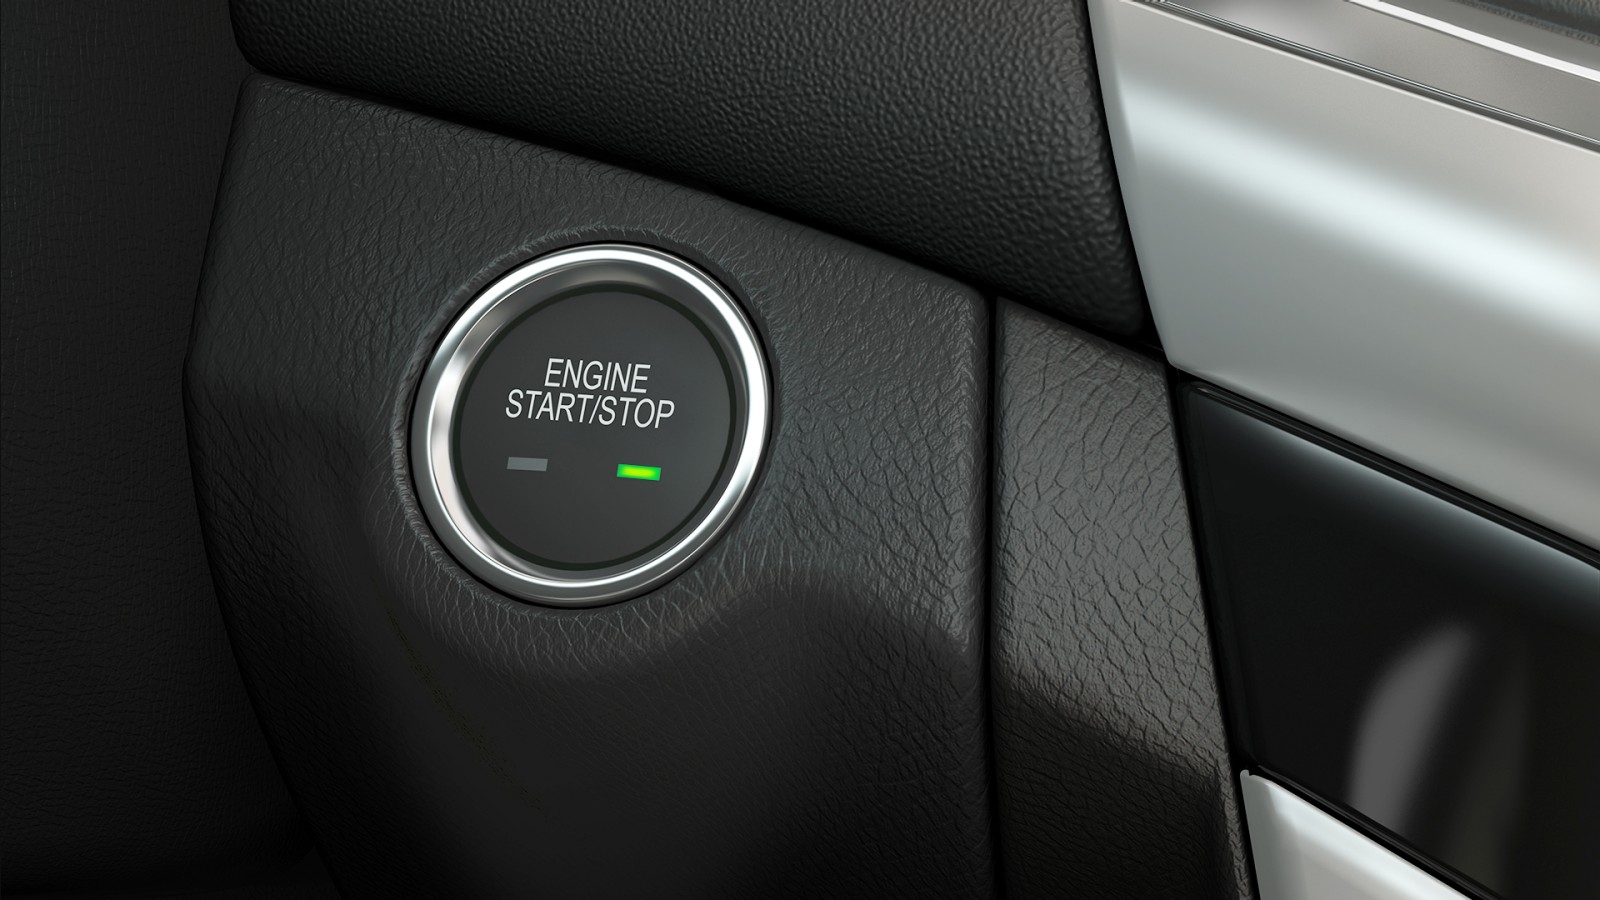 Tính năng chìa khóa thông minh của Chevrolet Cruze LTZ mới giúp người dùng khoá hay mở cửa xe dễ dàng tiện lợi hơn mà không cần lấy chìa ra khỏi túi. 